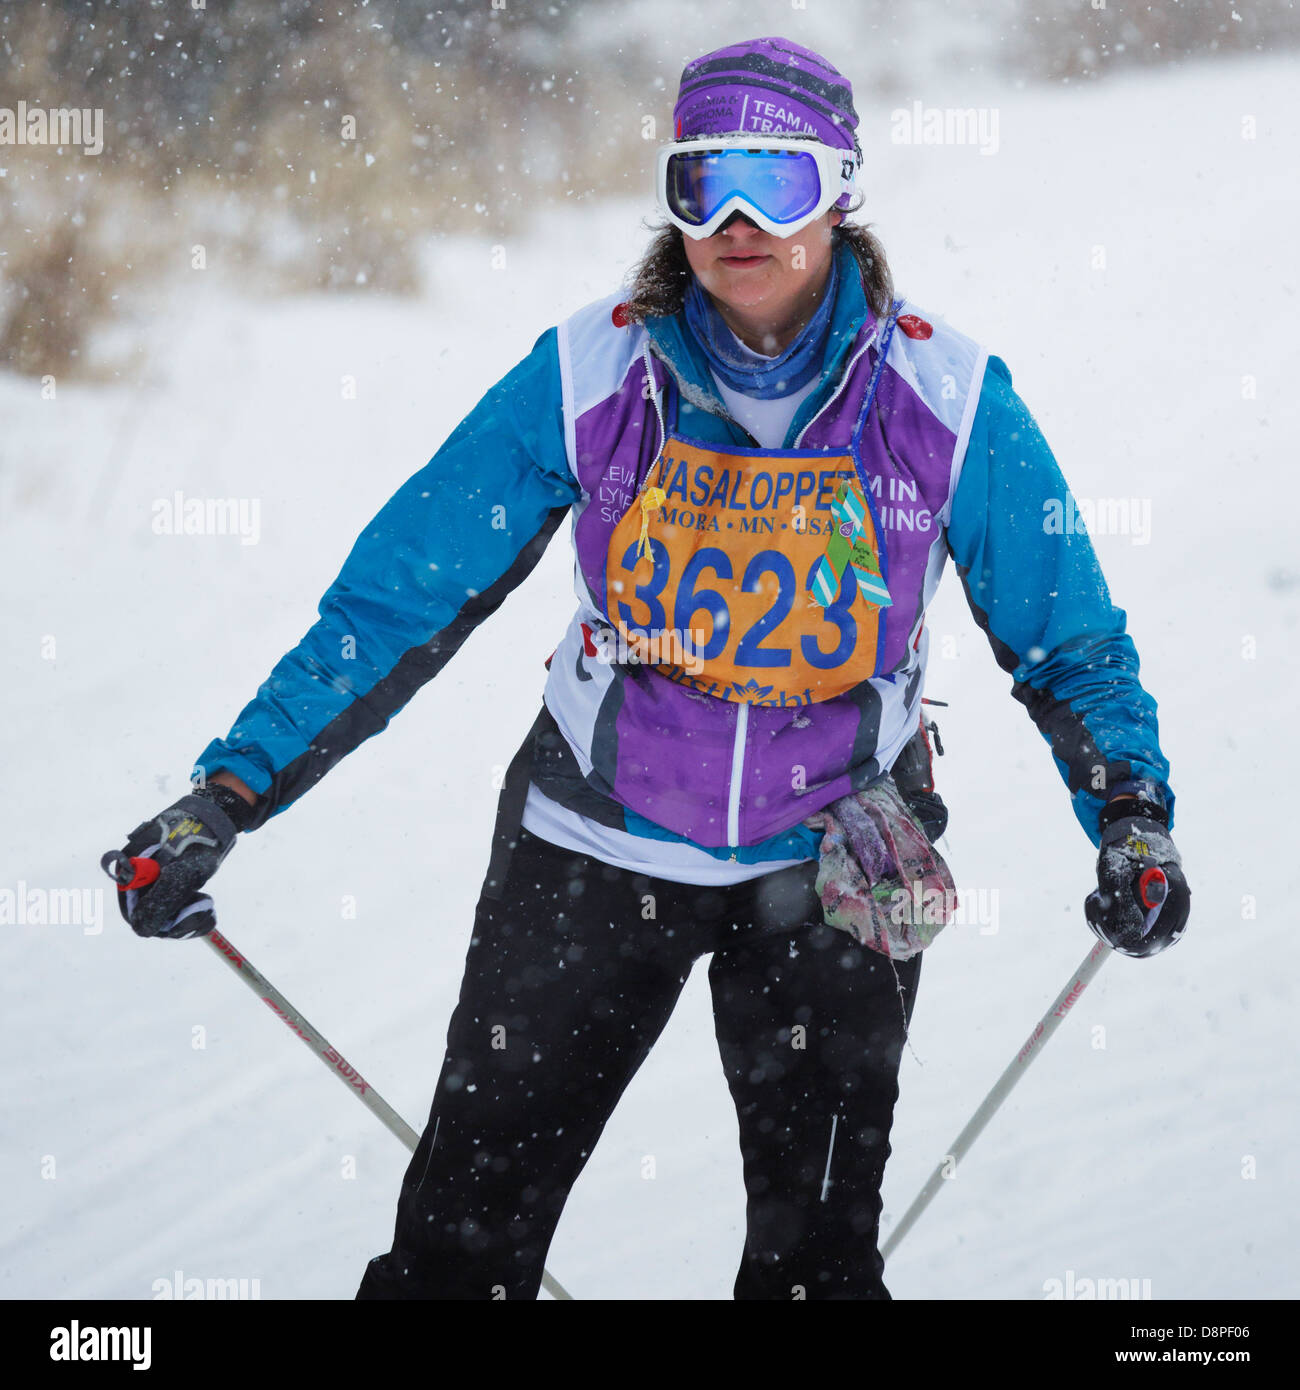 Una mujer compite en la carrera de esquí Vasaloppet Mora el 10 de febrero de 2013 en Mora, Minnesota. Foto de stock